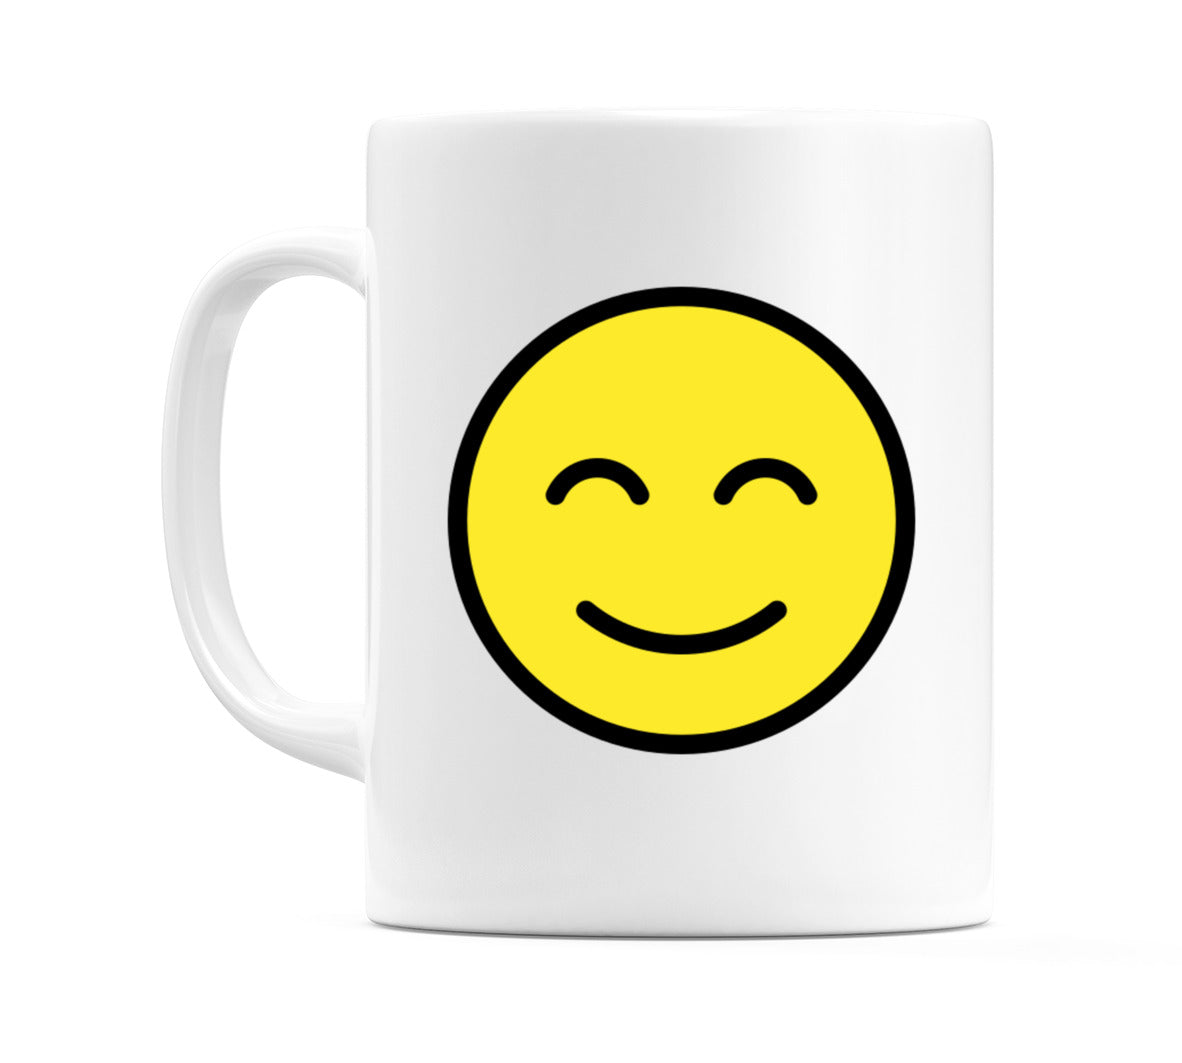 Smiling Face With Smiling Eyes Emoji Mug